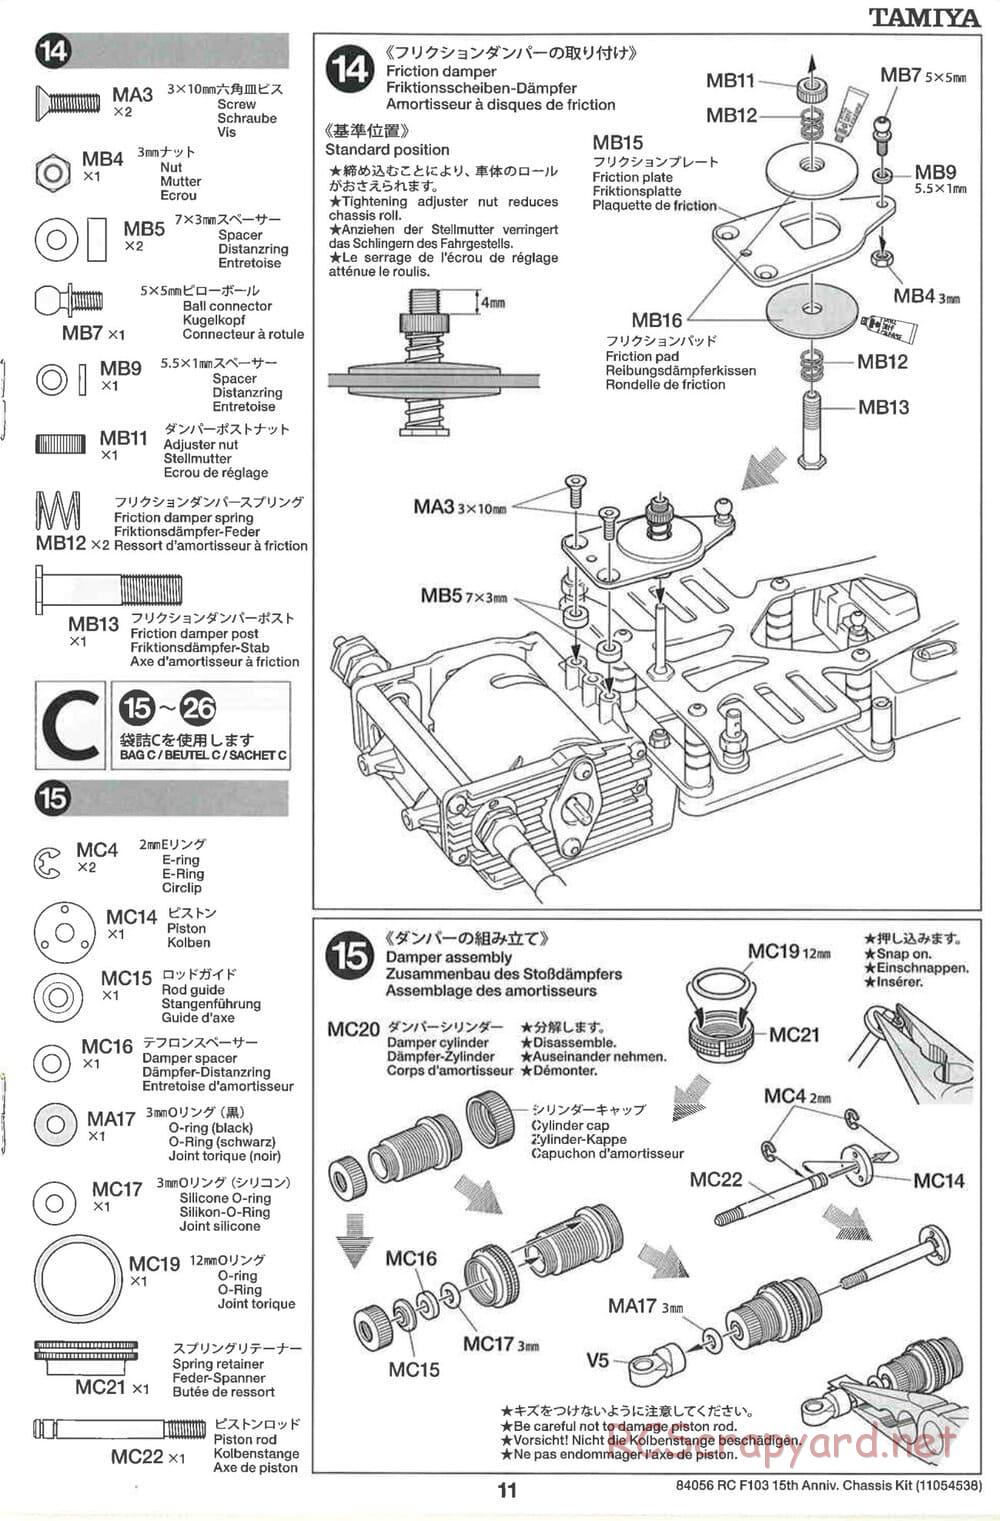 Tamiya - F103 15th Anniversary Chassis - Manual - Page 11